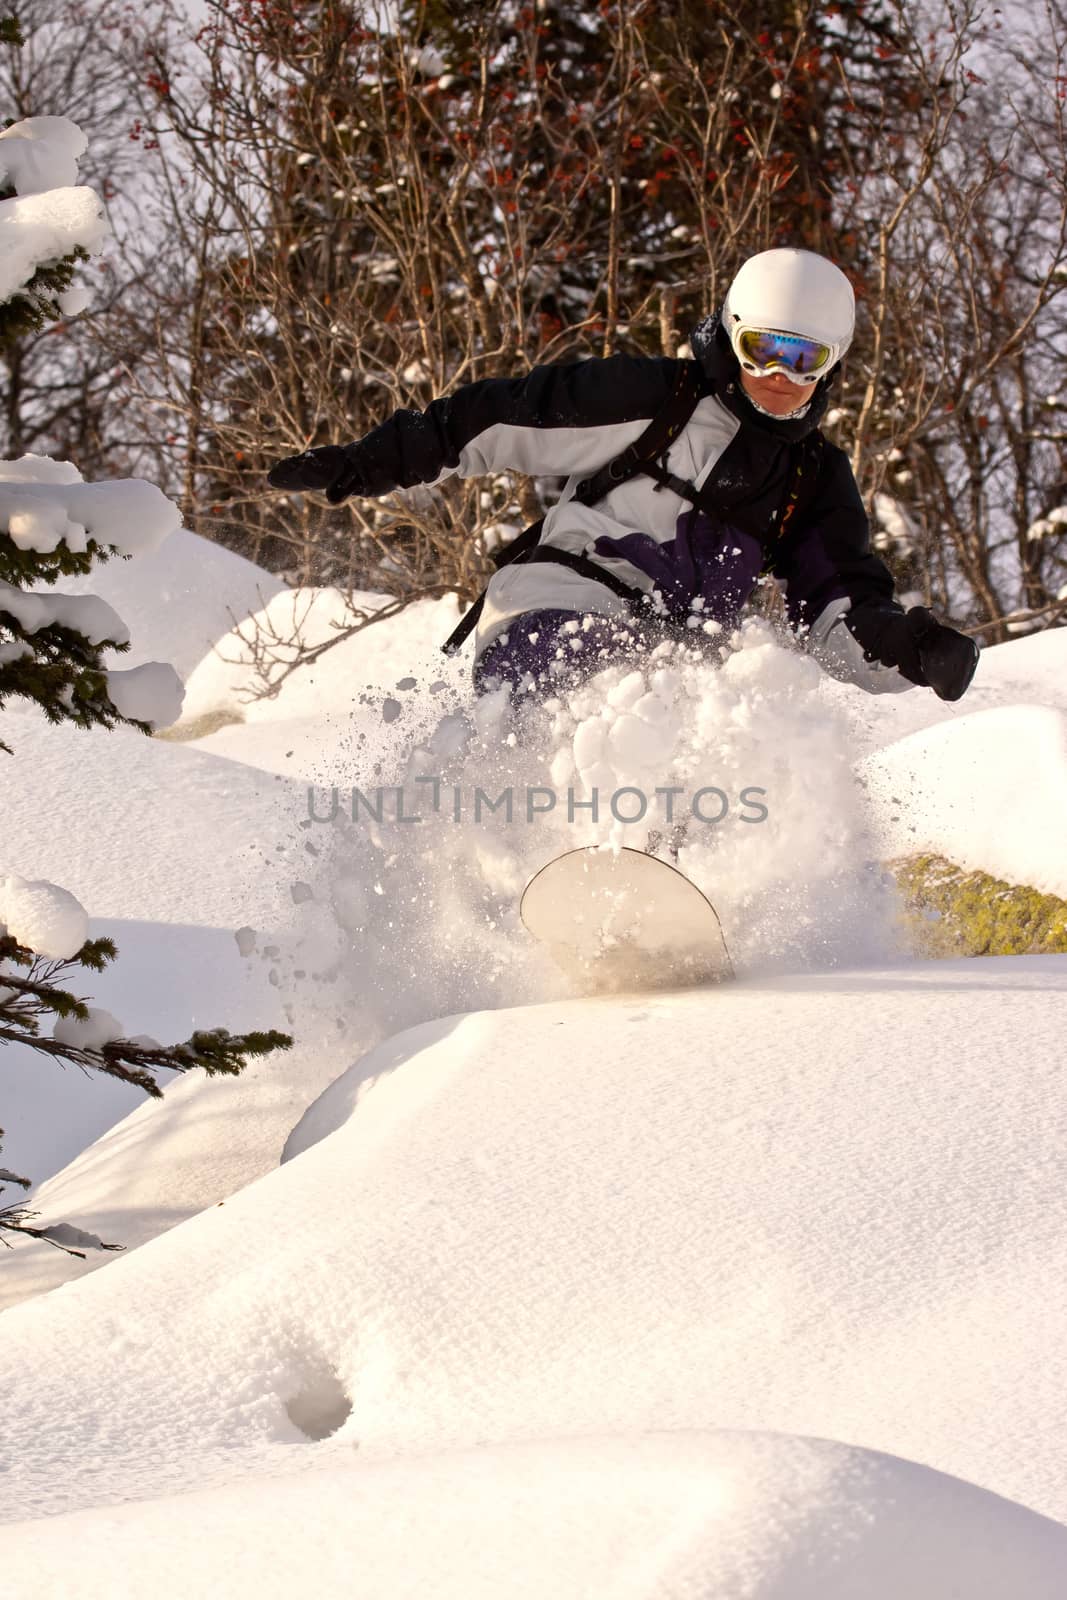 Snowboard freeride in Siberia by Chudakov